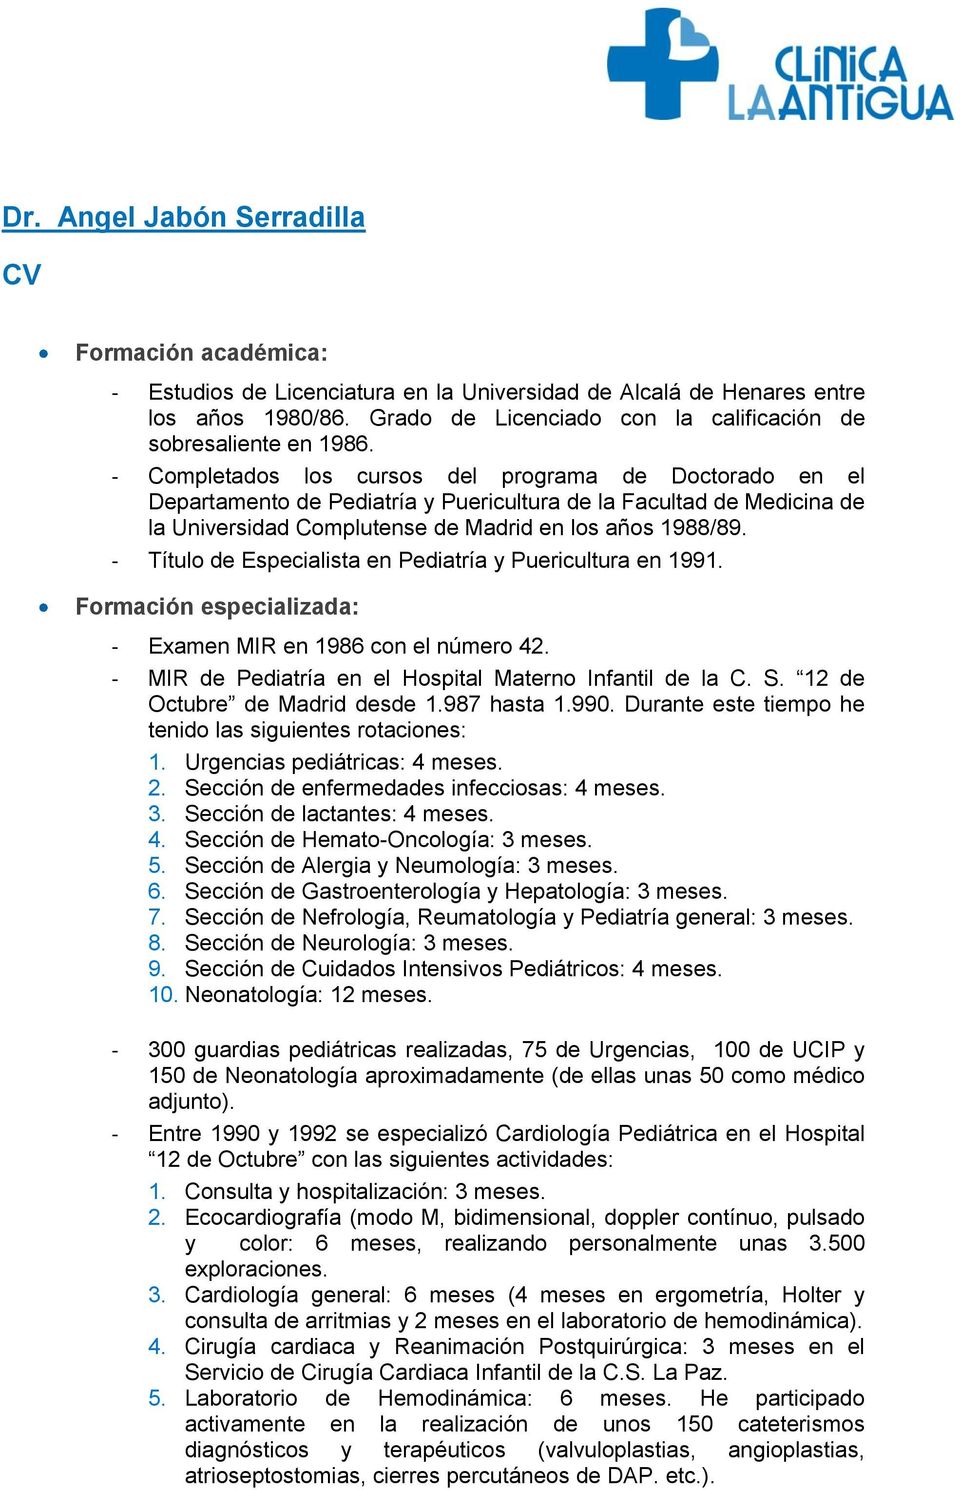 - Completados los cursos del programa de Doctorado en el Departamento de Pediatría y Puericultura de la Facultad de Medicina de la Universidad Complutense de Madrid en los años 1988/89.